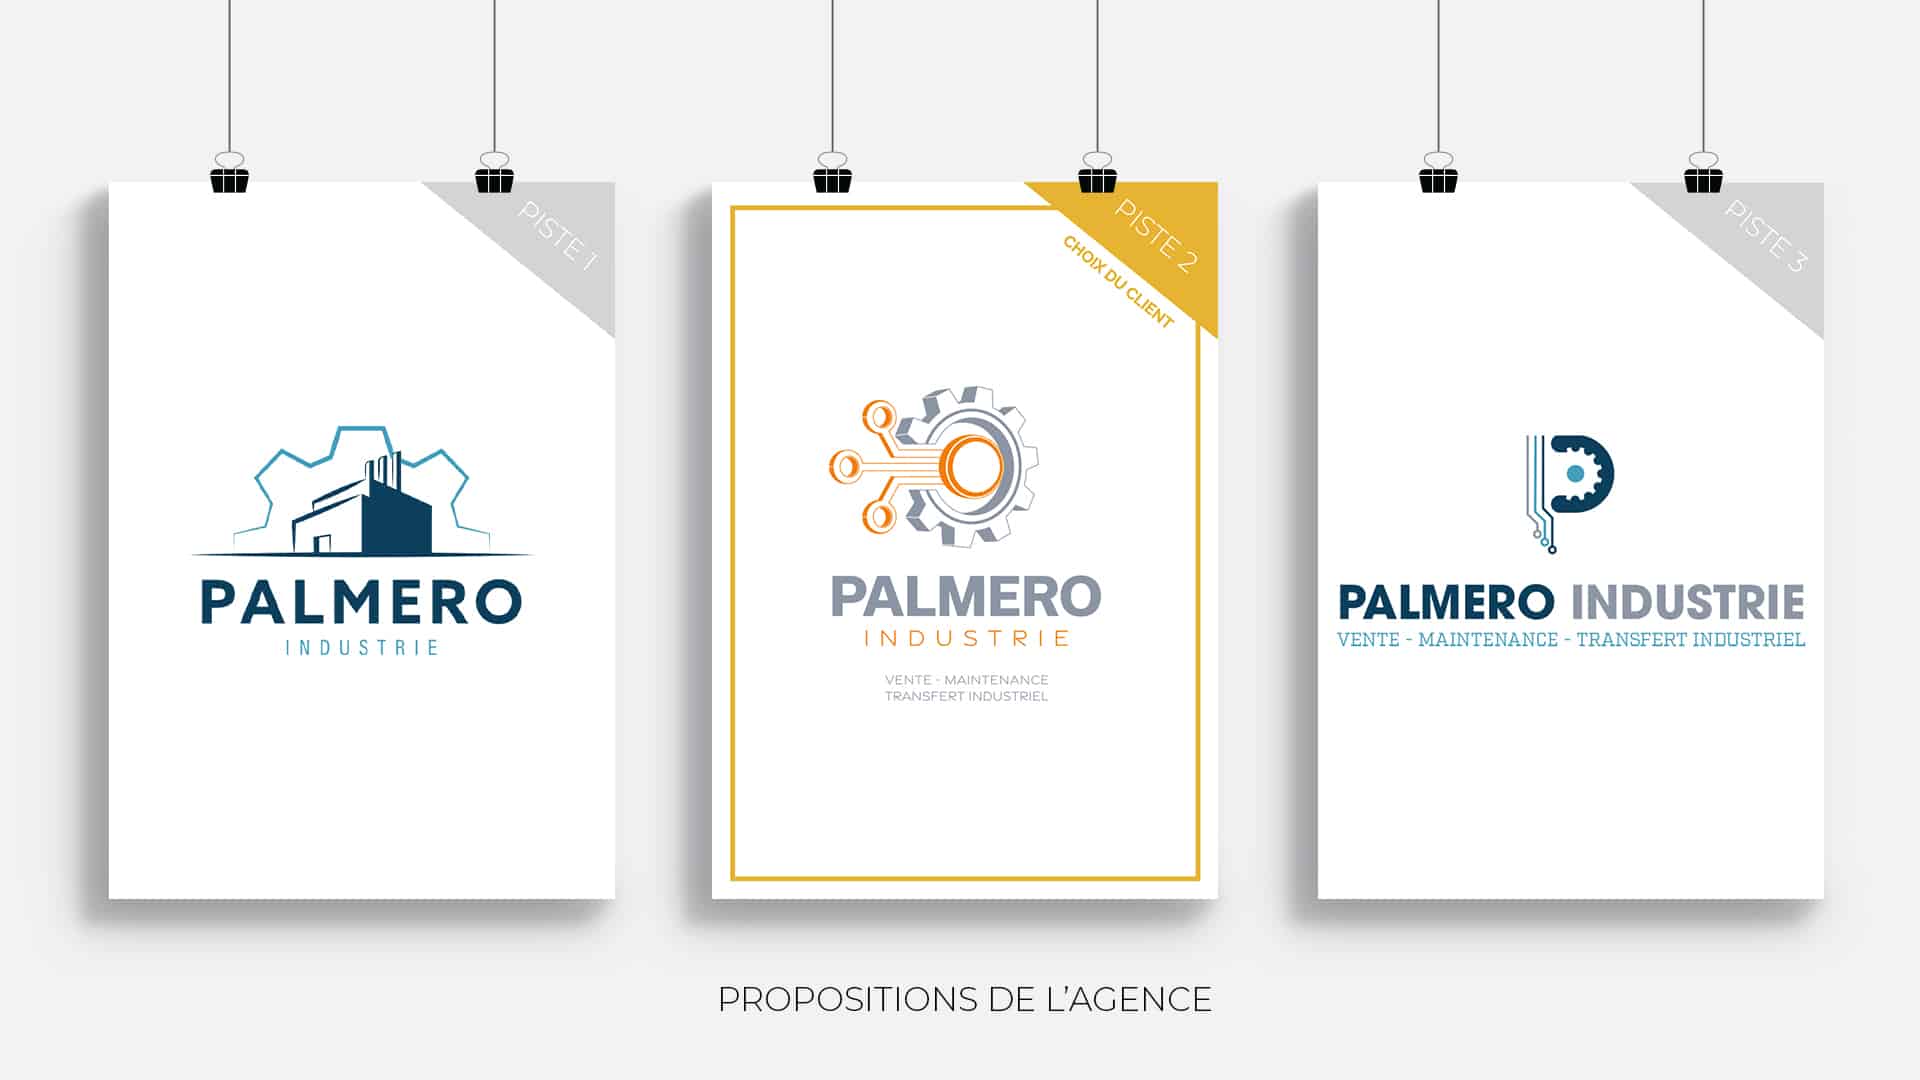 Mockup de présentation des propositions de logotypes réalisées par l'agence pour Palmero dans la refonte d'identité visuelle de la marque.